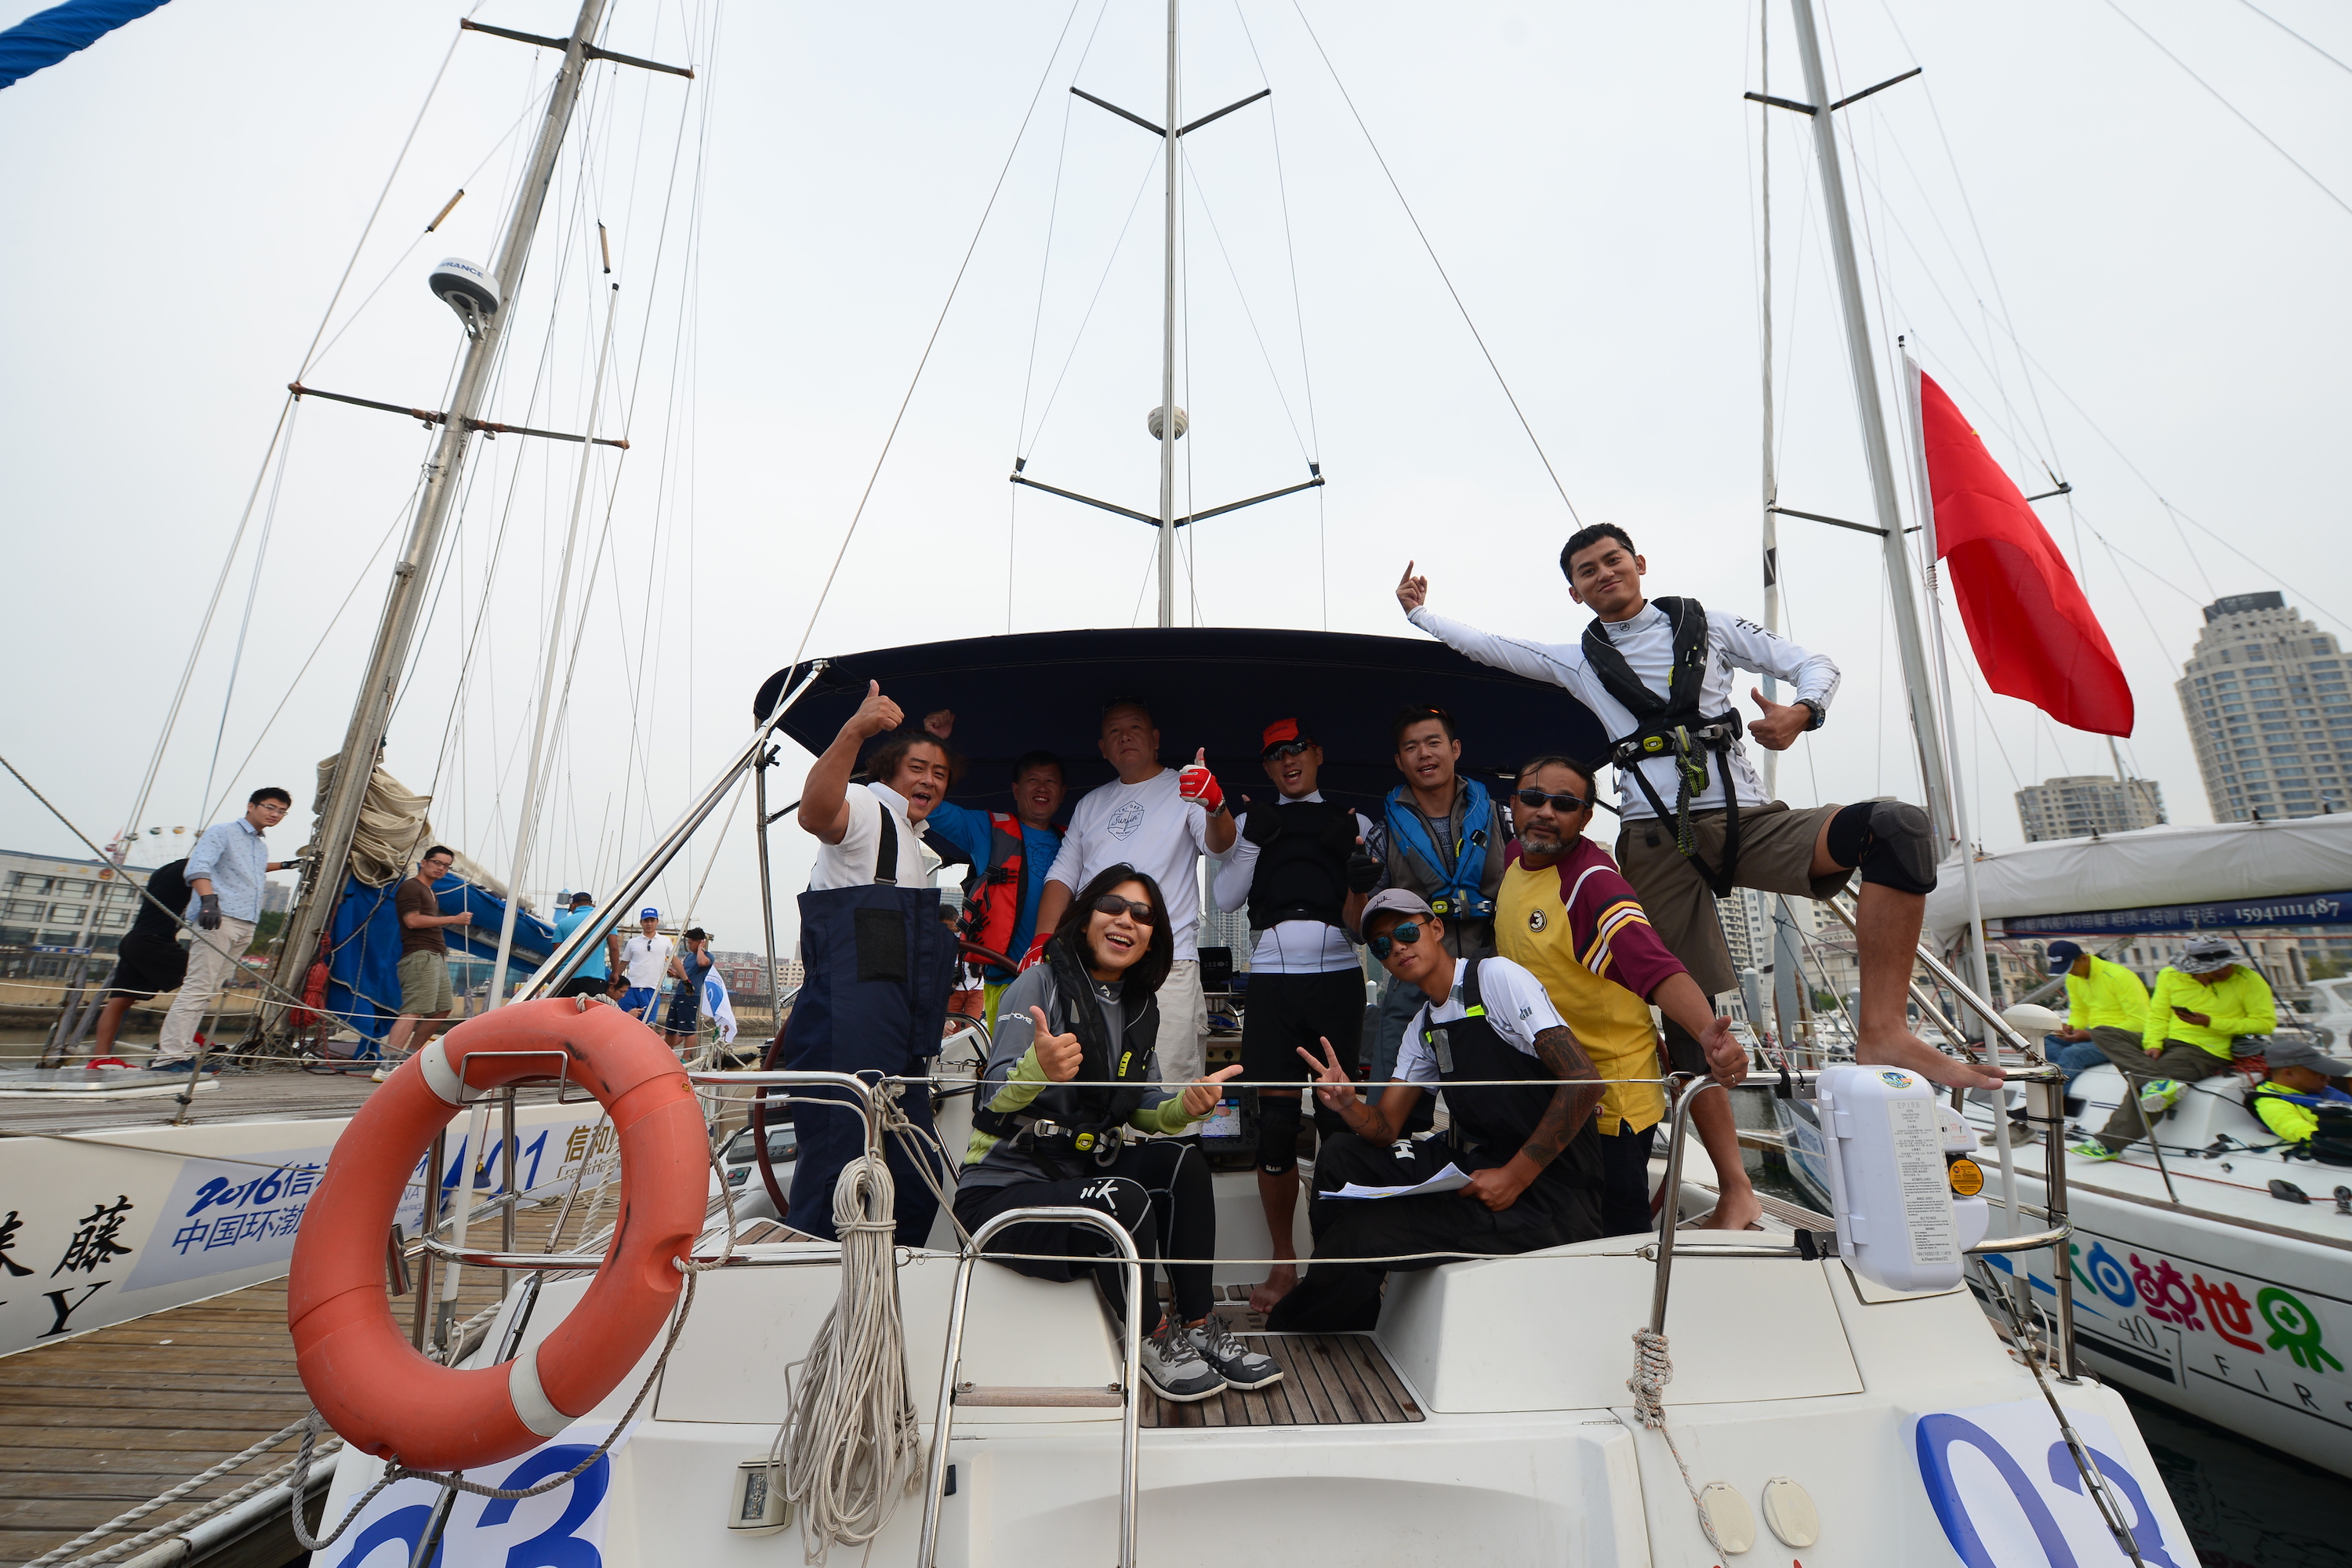 我要航海网千航帆船队2016环渤海杯帆船拉力赛BAO_5262.JPG